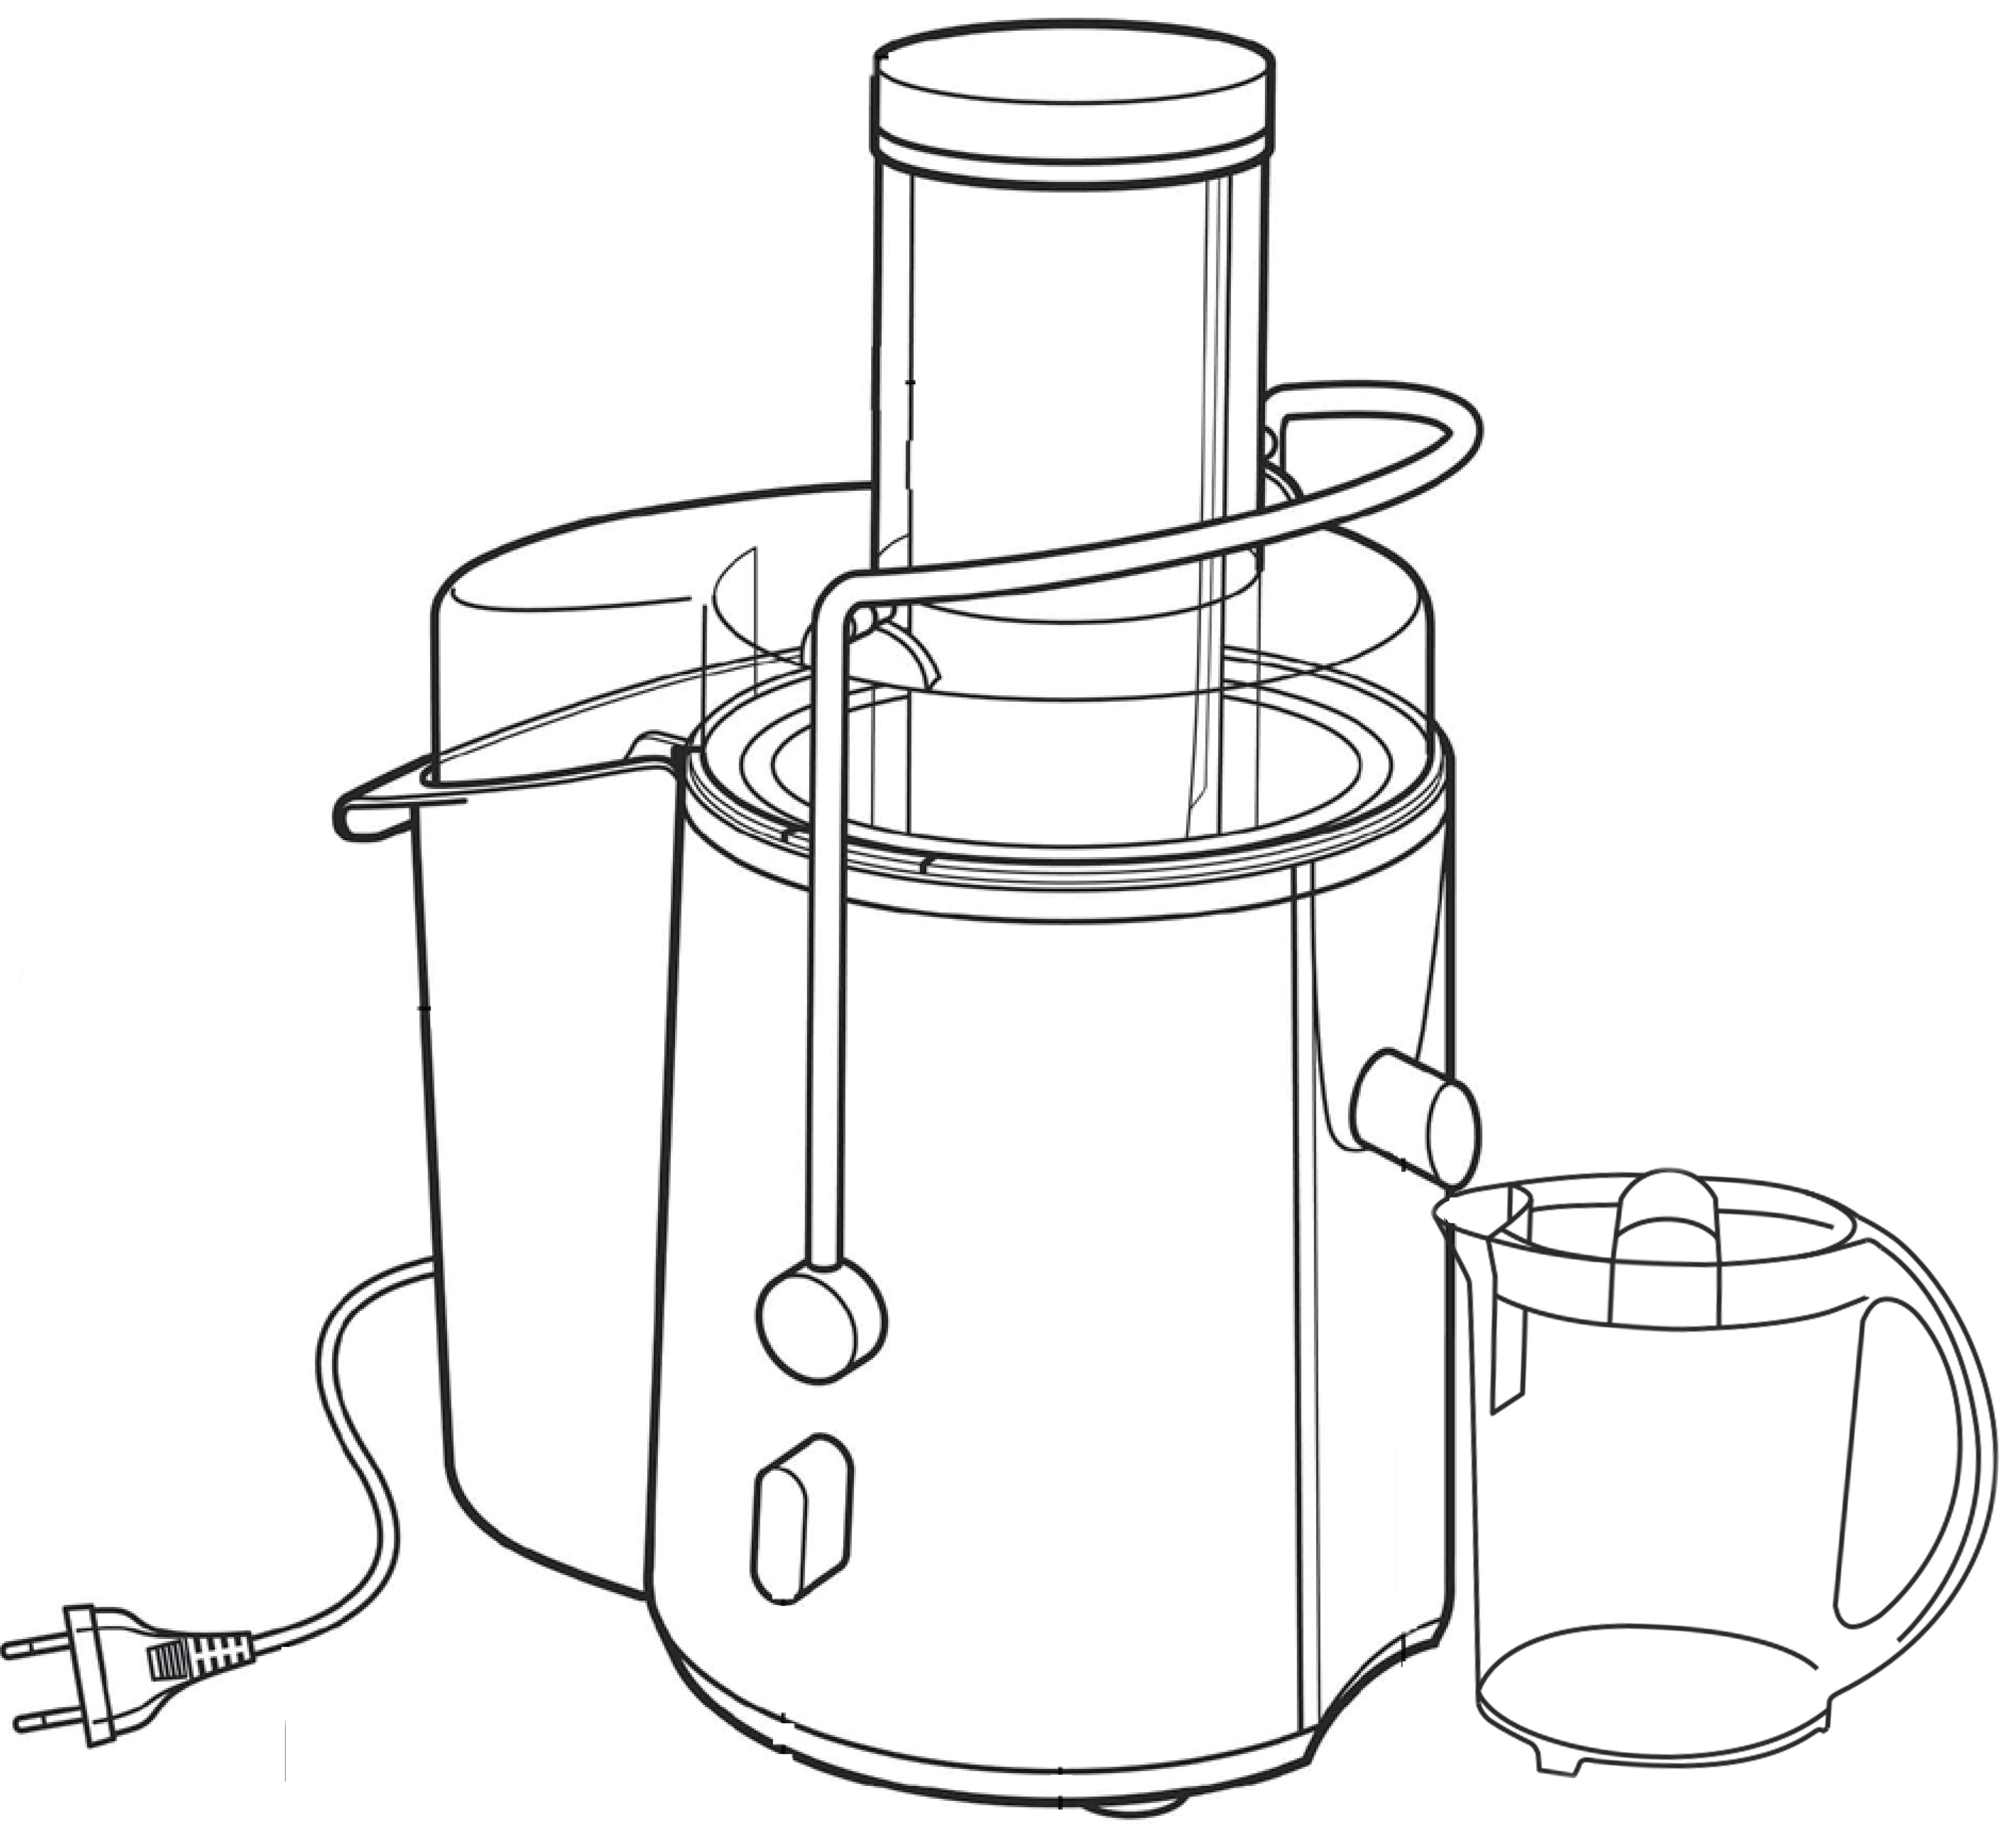 БТиЭ - Соковыжималка - Juicer - устройство для выжимания сока из фруктов, ягод и овощей